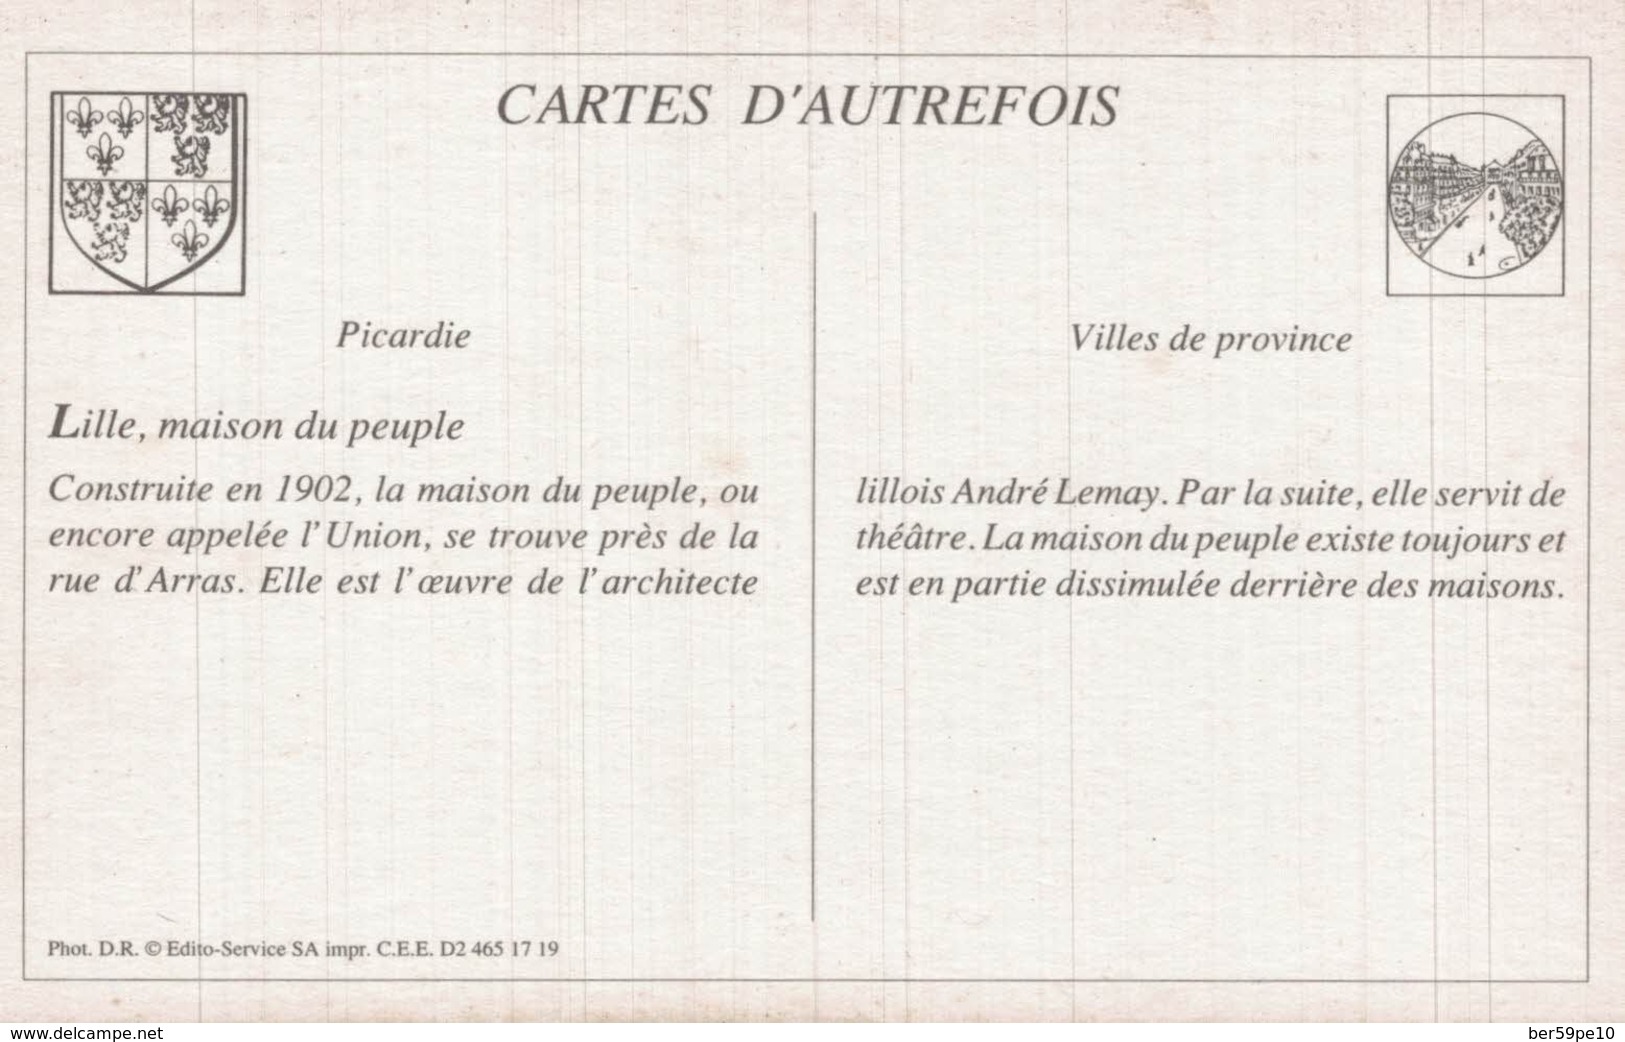 CARTE D'AUTREFOIS VILLES DE PROVINCE PICARDIE LILLE MAISON DU PEUPLE - Picardie